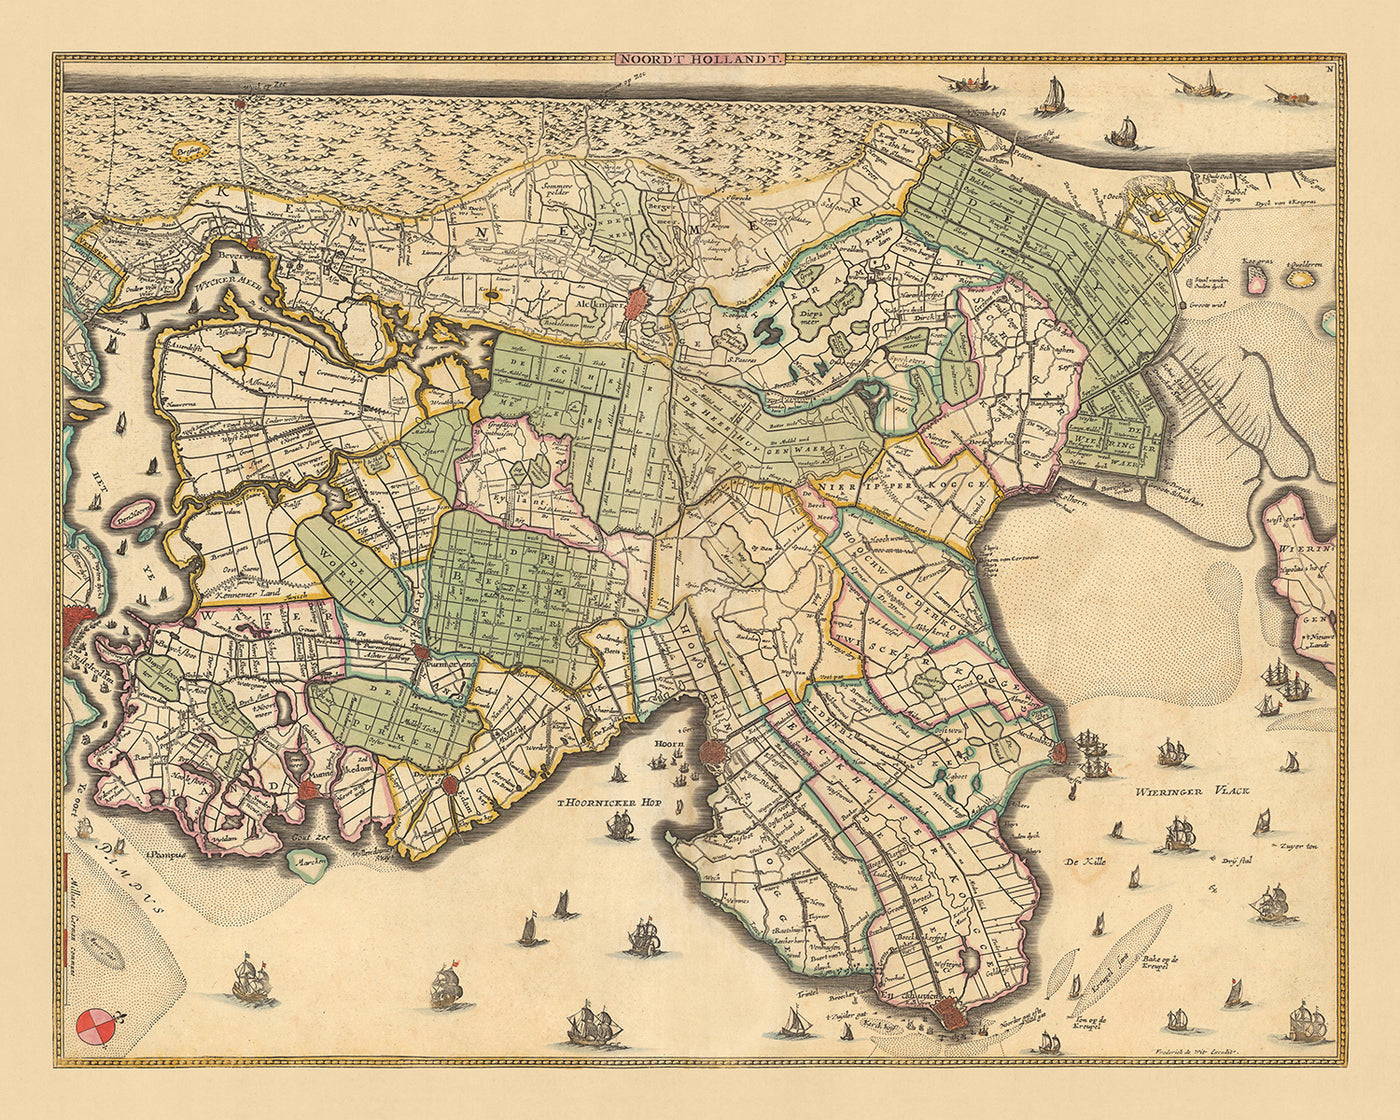 Mapa antiguo de Holanda Septentrional de Visscher, 1690: Amsterdam, Alkmaar, Hoorn, Beverwijk, Purmerend